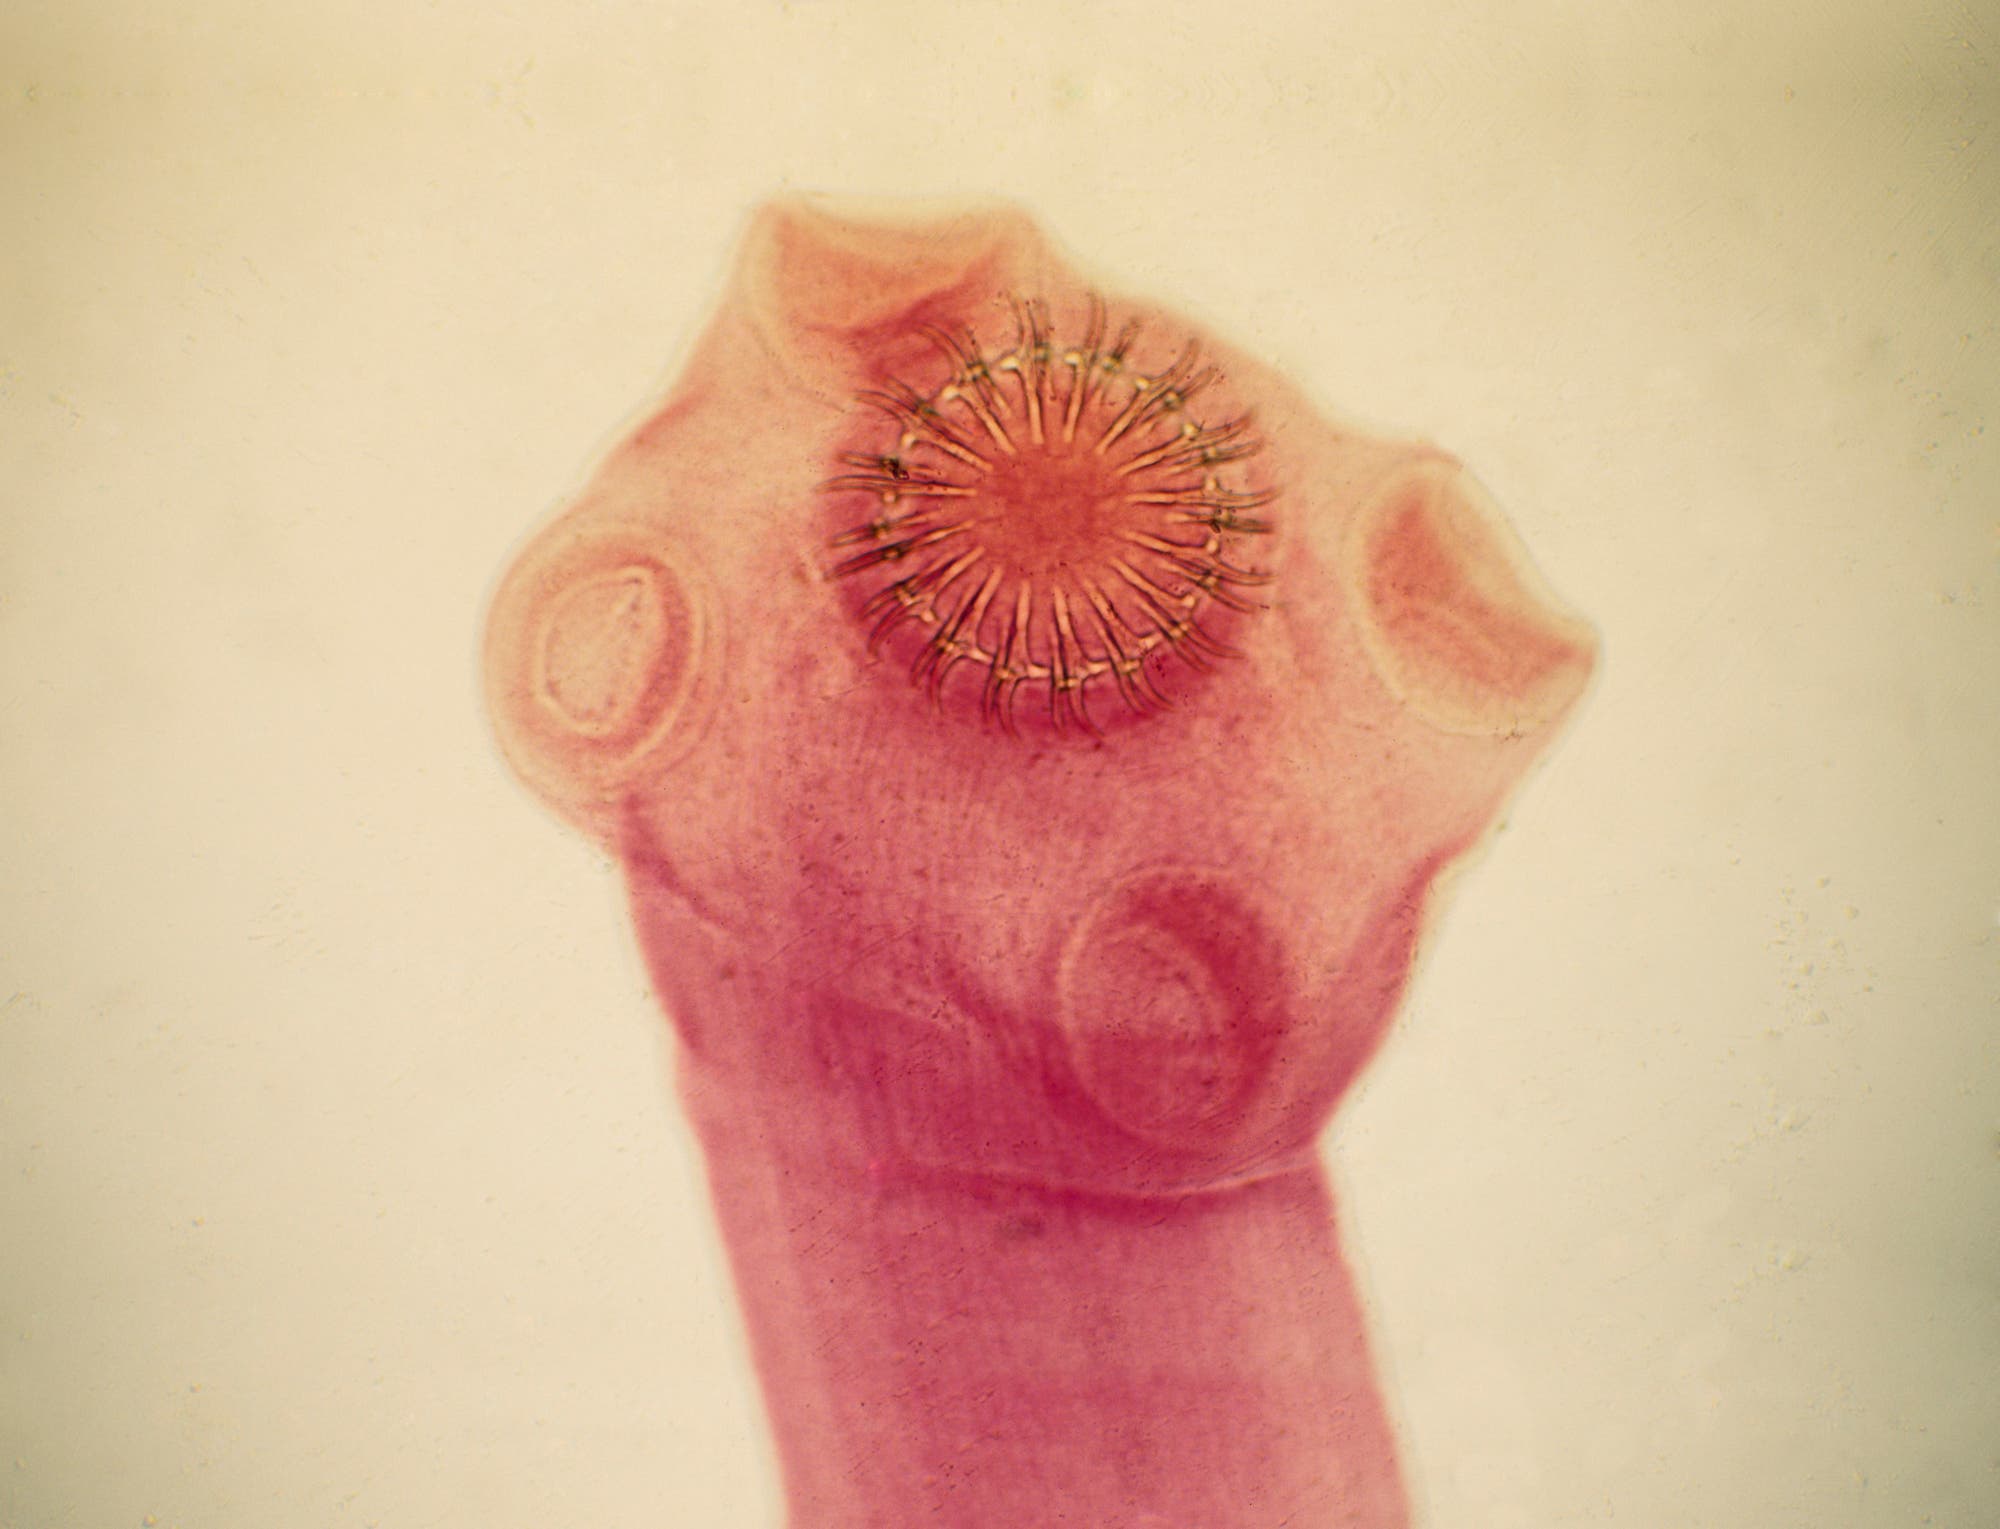 Kopfteil eines Schweinebandwurms mit einem zenralen saugnapfartigen Haken und vier darum angeordnete Beulen